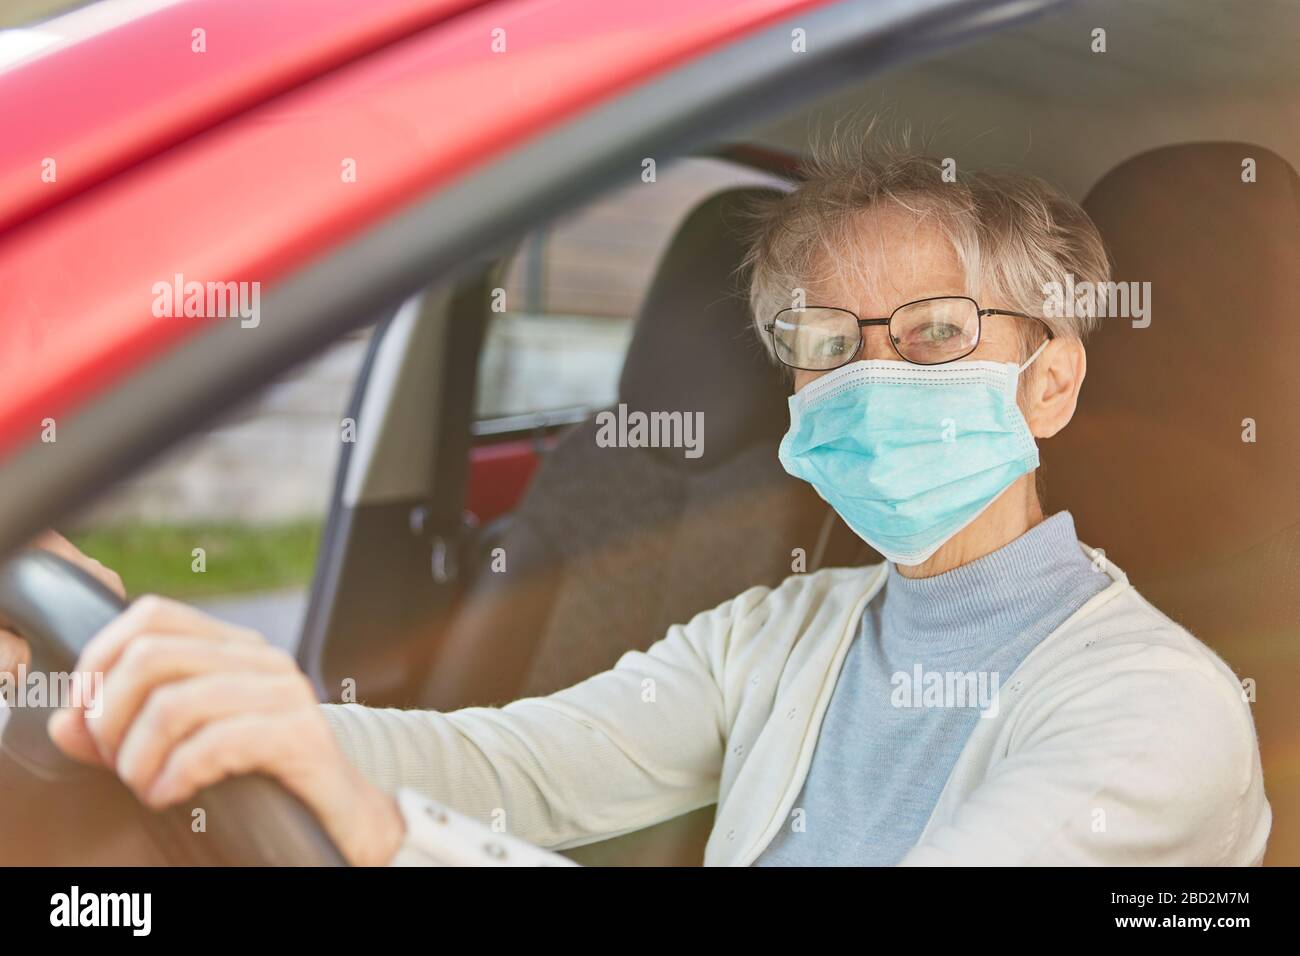 Les personnes âgées en tant que groupe de risque Covid-19 avec protection de la bouche lors de la conduite d'une voiture en cas de pandémie de coronavirus Banque D'Images